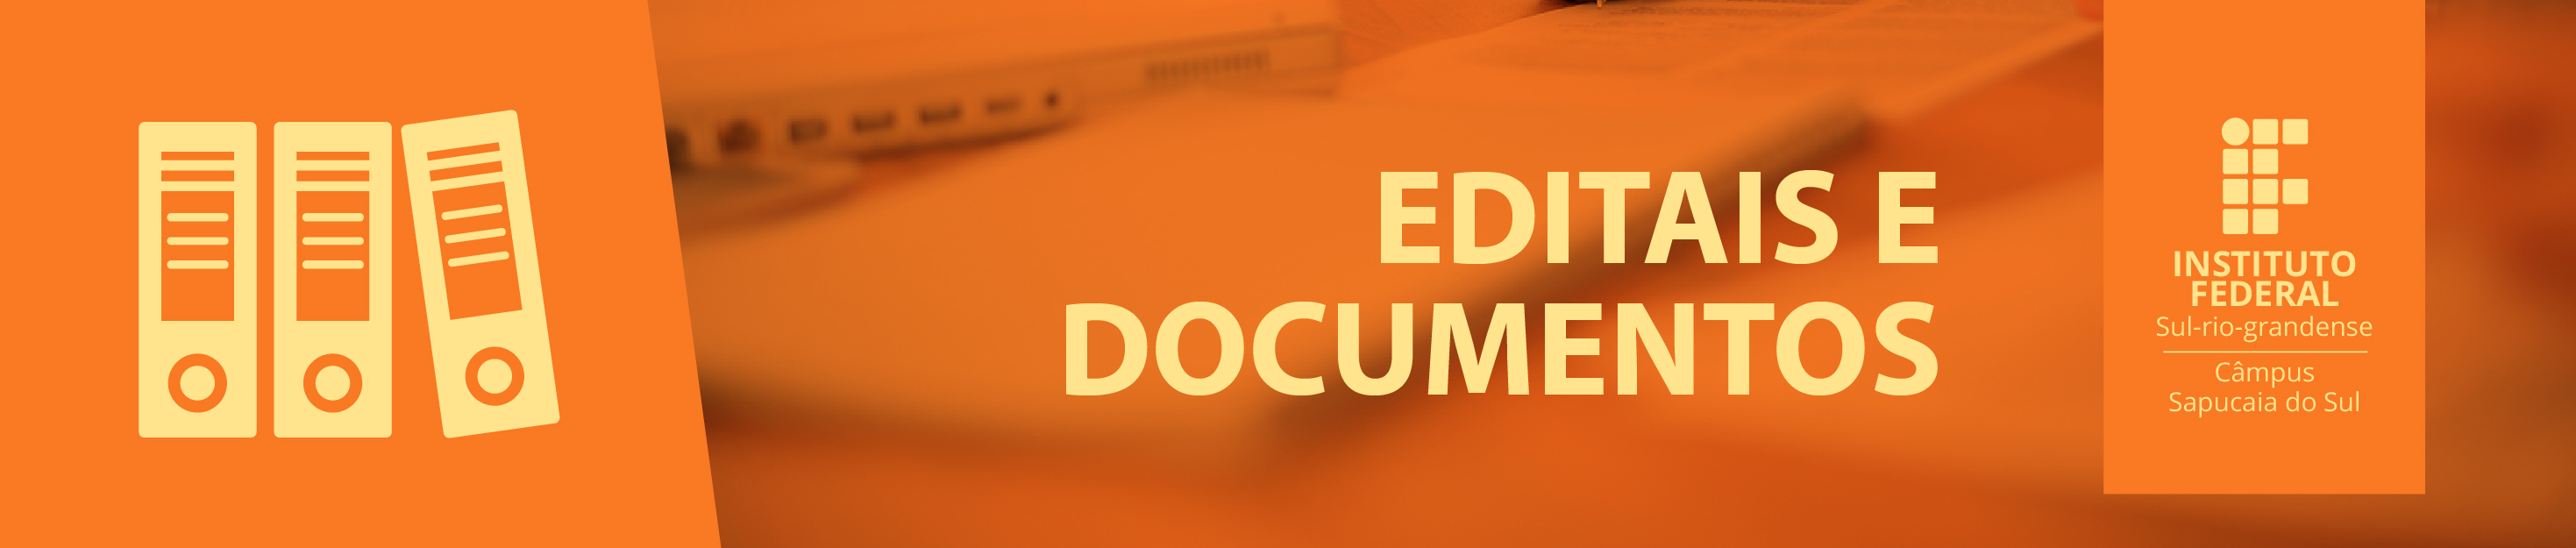 Editais e documentos